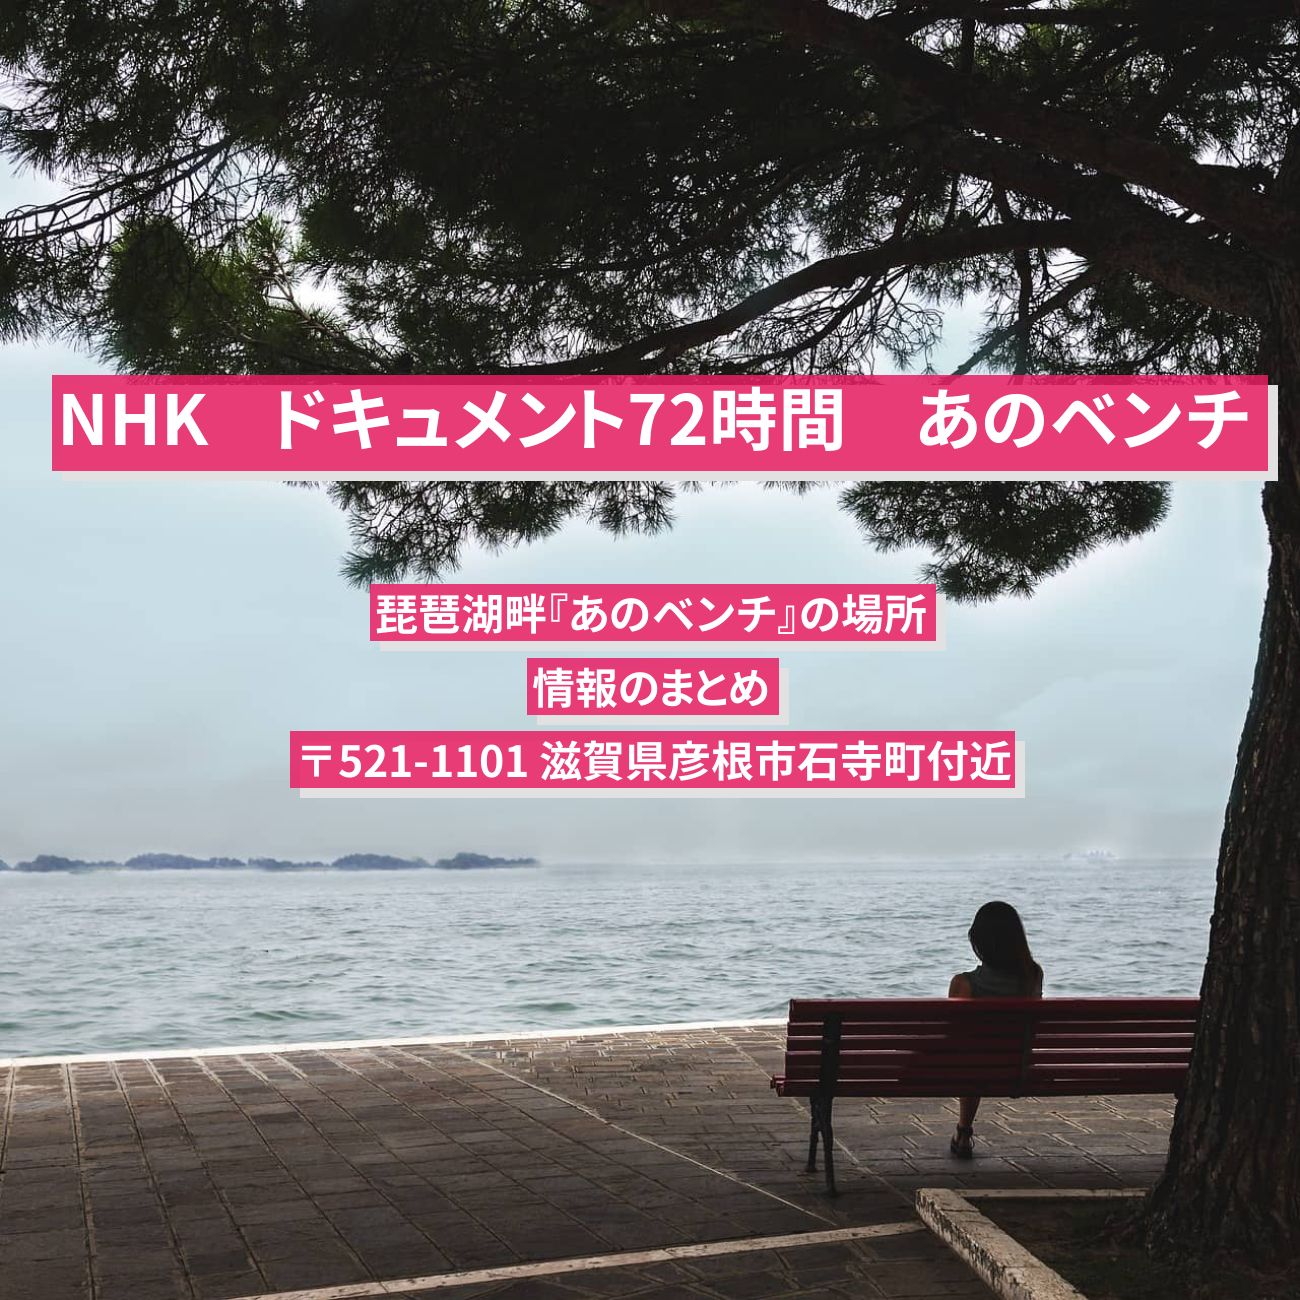 【NHK ドキュメント72時間】琵琶湖畔『あのベンチ (滋賀県彦根市)』の場所・情報のまとめ